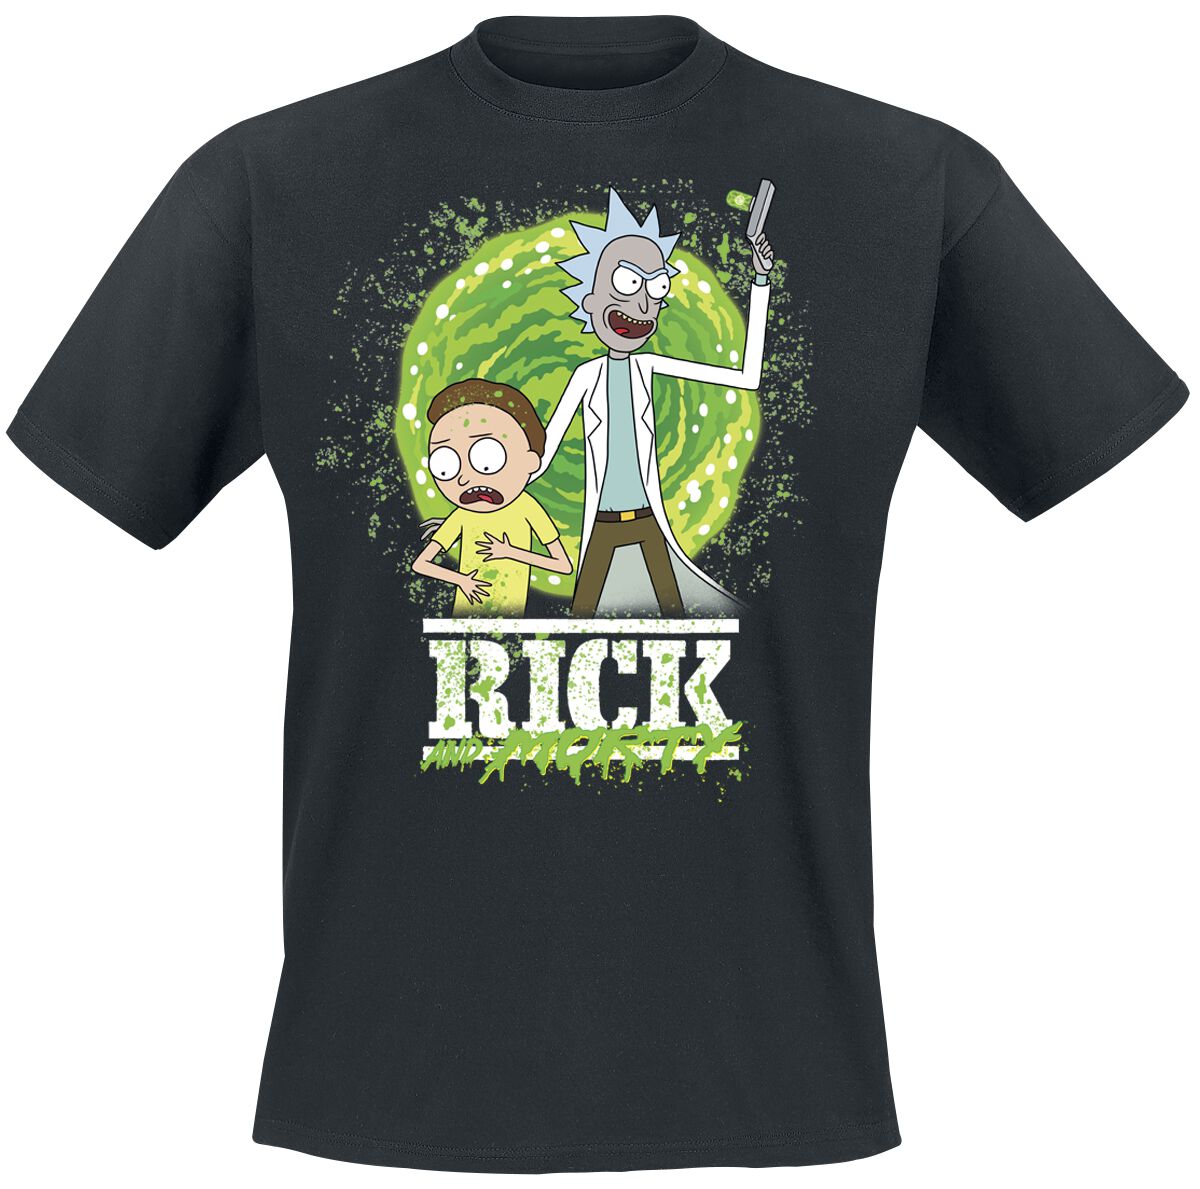 Rick And Morty T-Shirt - Season 6 - S bis XXL - für Männer - Größe XL - schwarz  - Lizenzierter Fanartikel